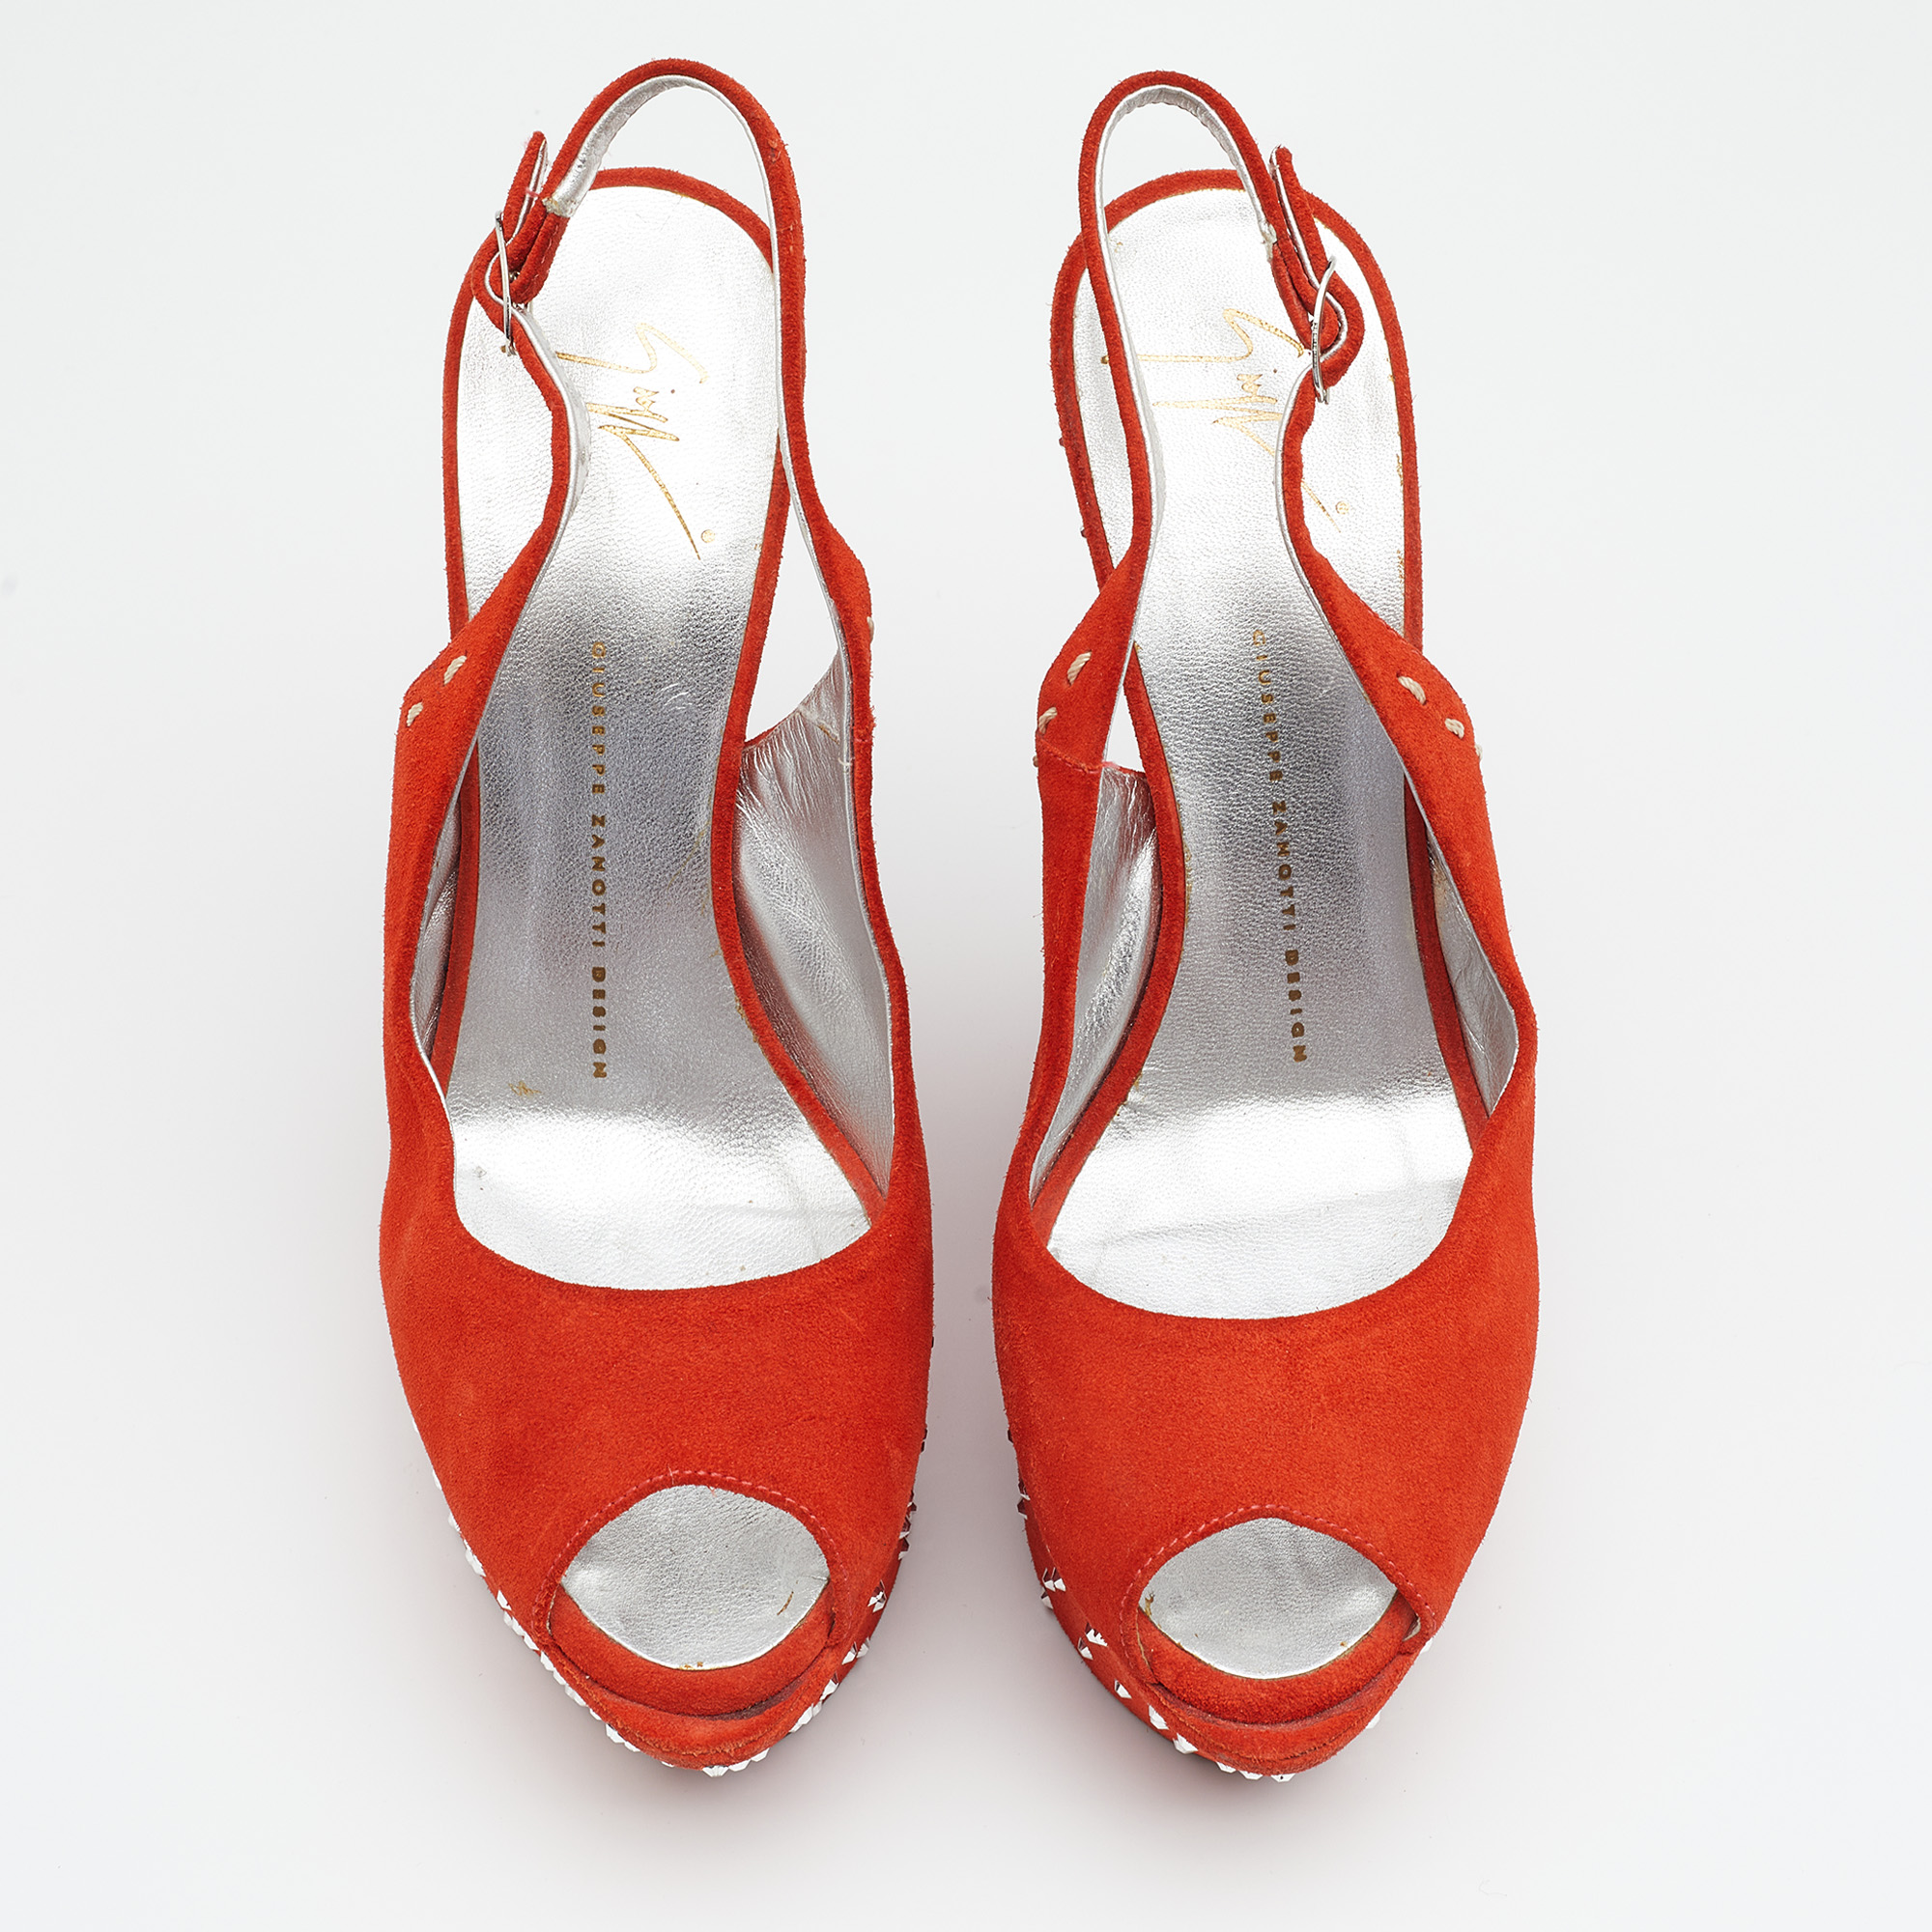 Giuseppe Zanotti Orange Suede Studded Wedge Sandals Size 39